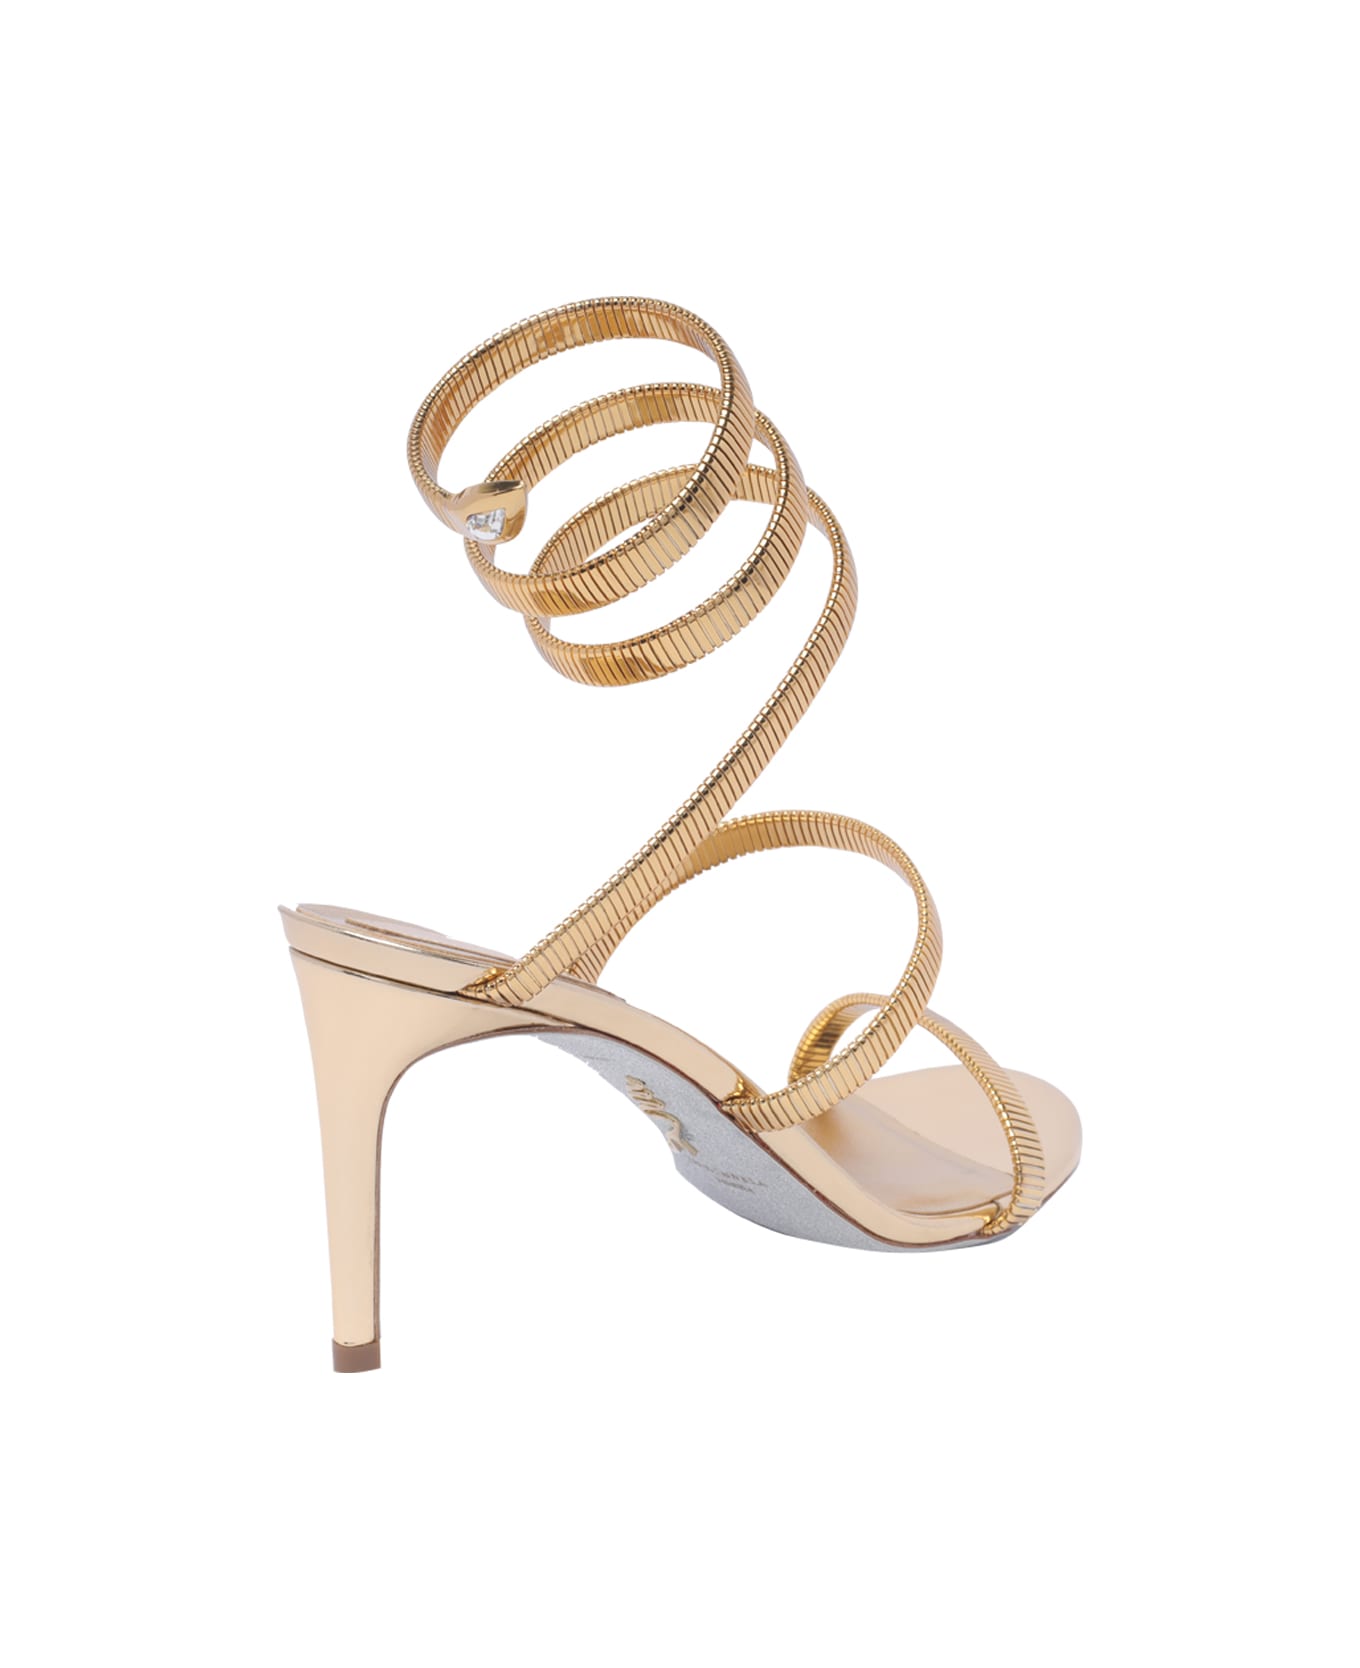 René Caovilla Cleo Pump Sandals - Golden